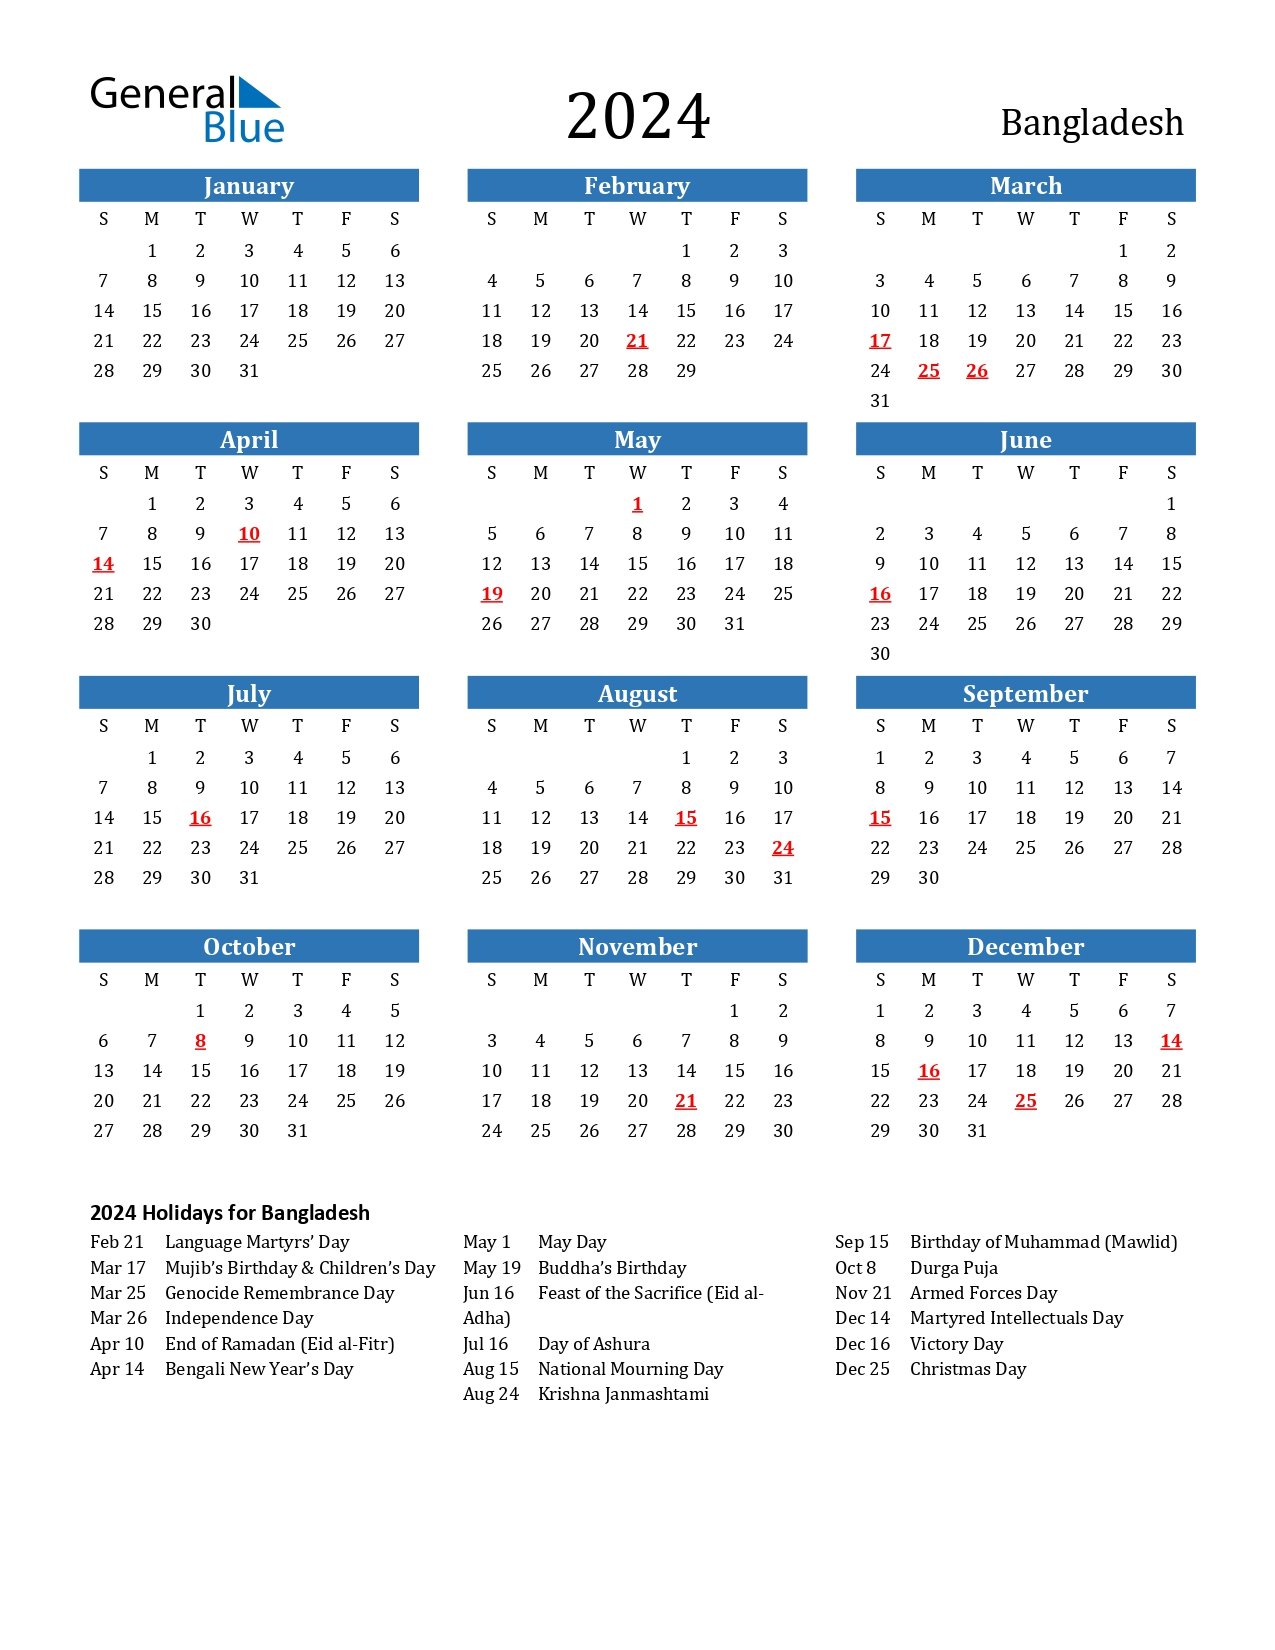 ২০২৪ সালের সরকারি ছুটির তালিকা - Bangladesh Public Holidays And Calendar 2024 - Bangladesh Govt calendar 2024 - ২০২৪ সালের সরকারি ছুটির তালিকা ও ক্যালেন্ডার - বাংলাদেশ সরকারী ক্যালেন্ডার 2024